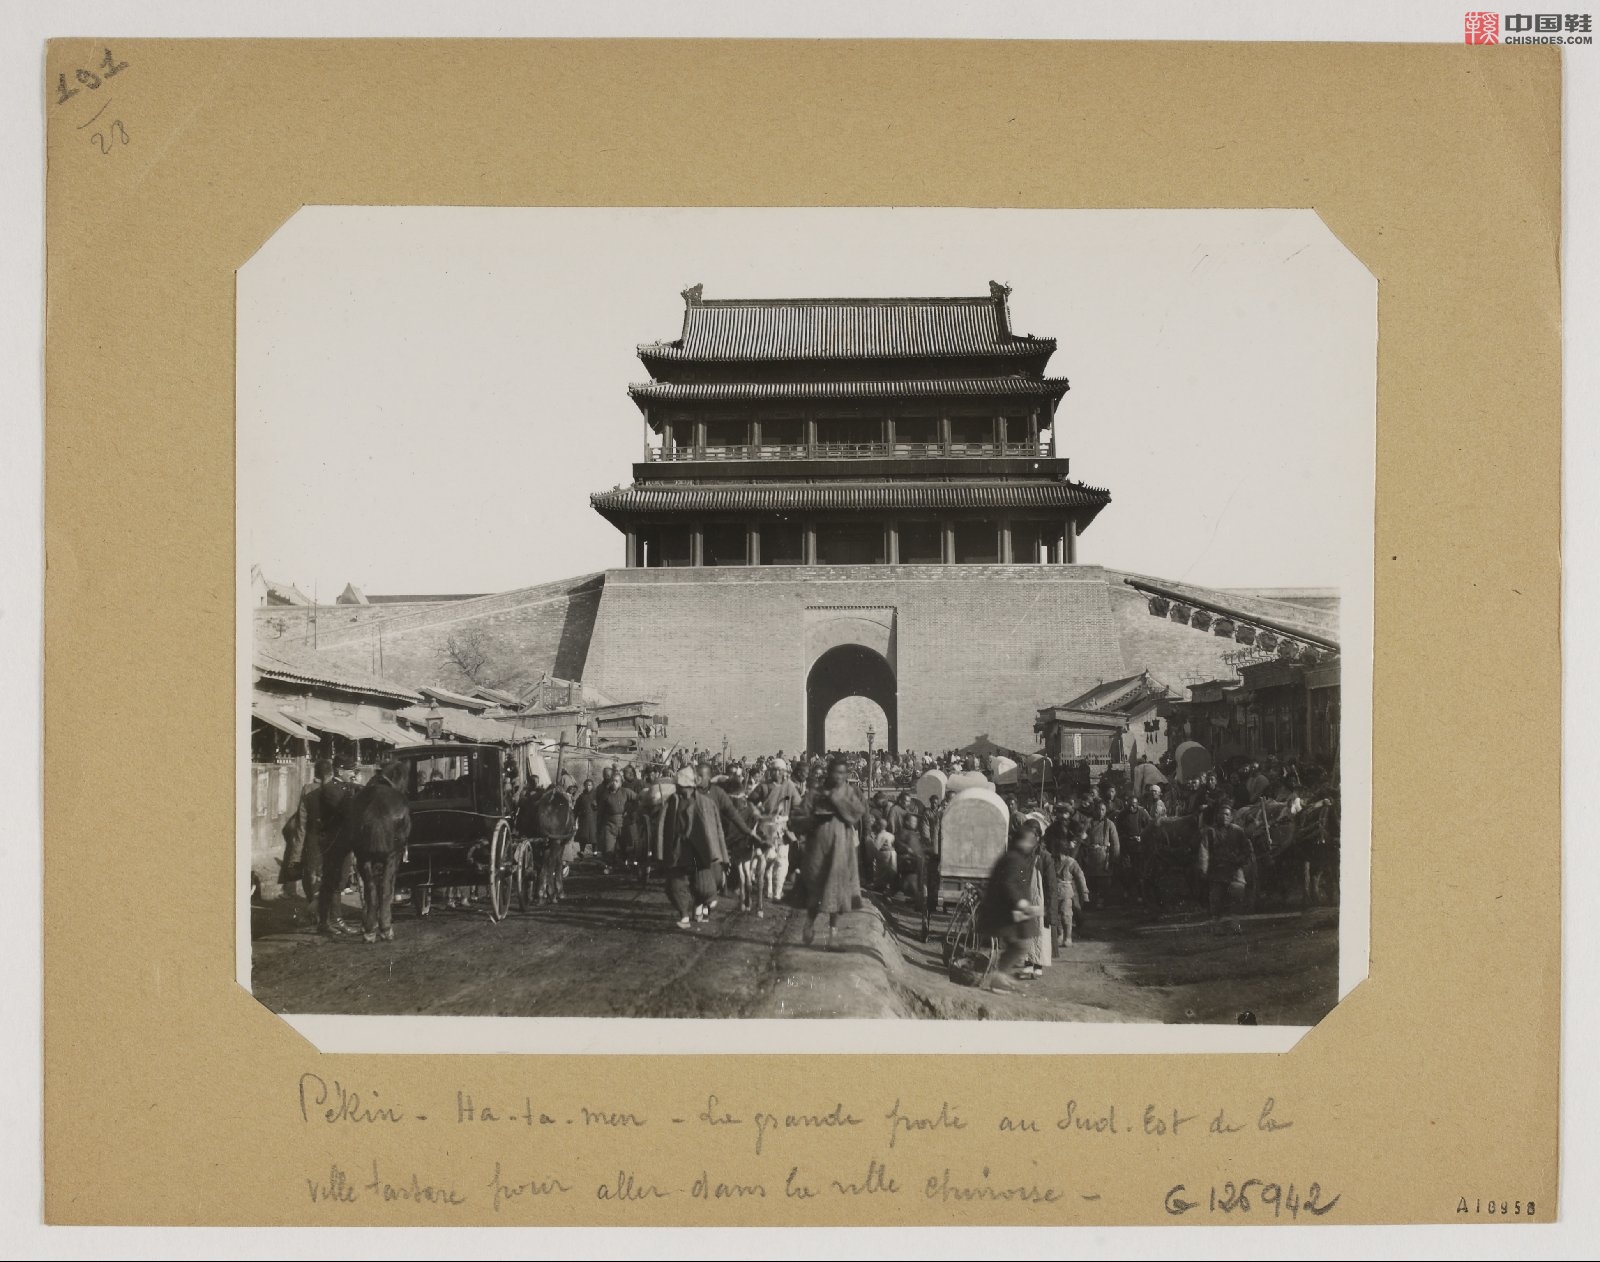 拉里贝的中国影像记录.415幅.By Firmin Laribe.1900-1910年_Page_407.jpg